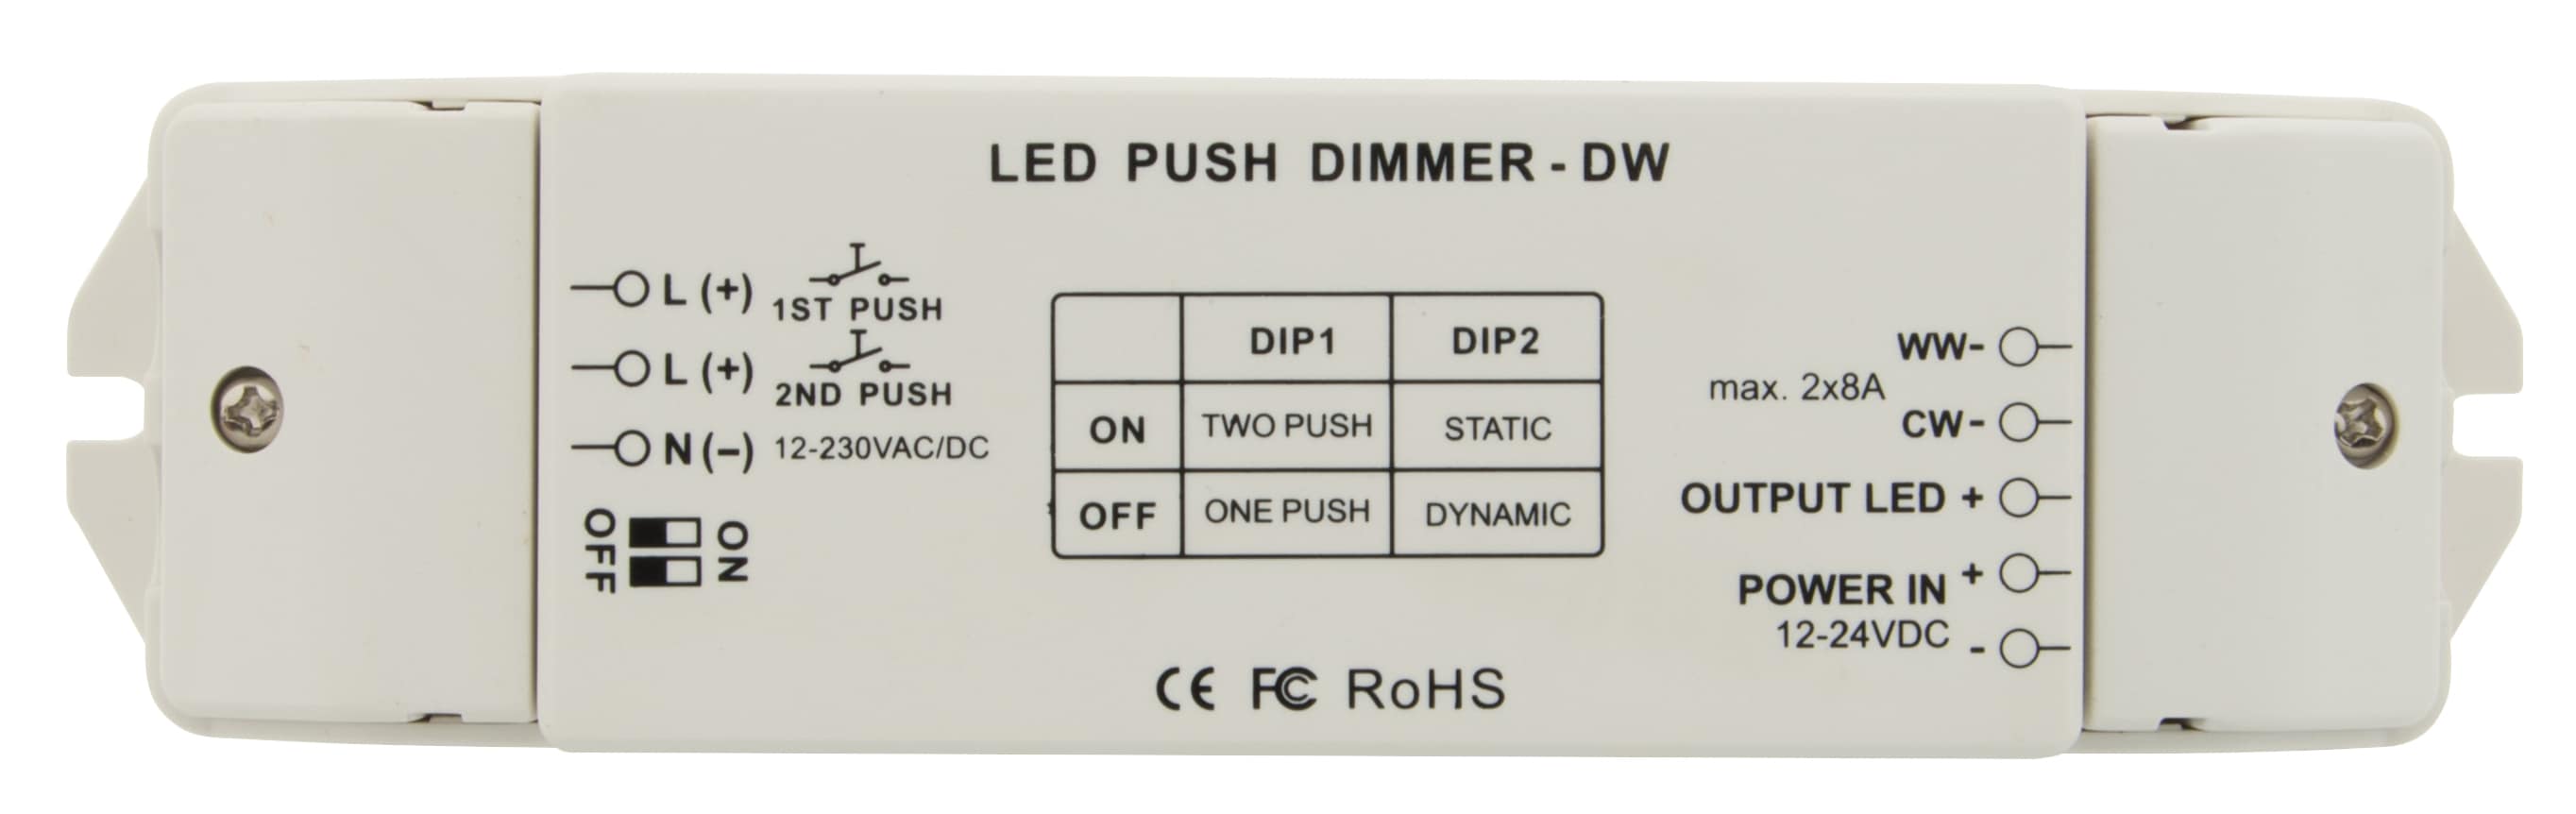 https://autled.com/daten/foto/Produktfoto_LED-Push-Dimmer-DW_1_v1.jpg